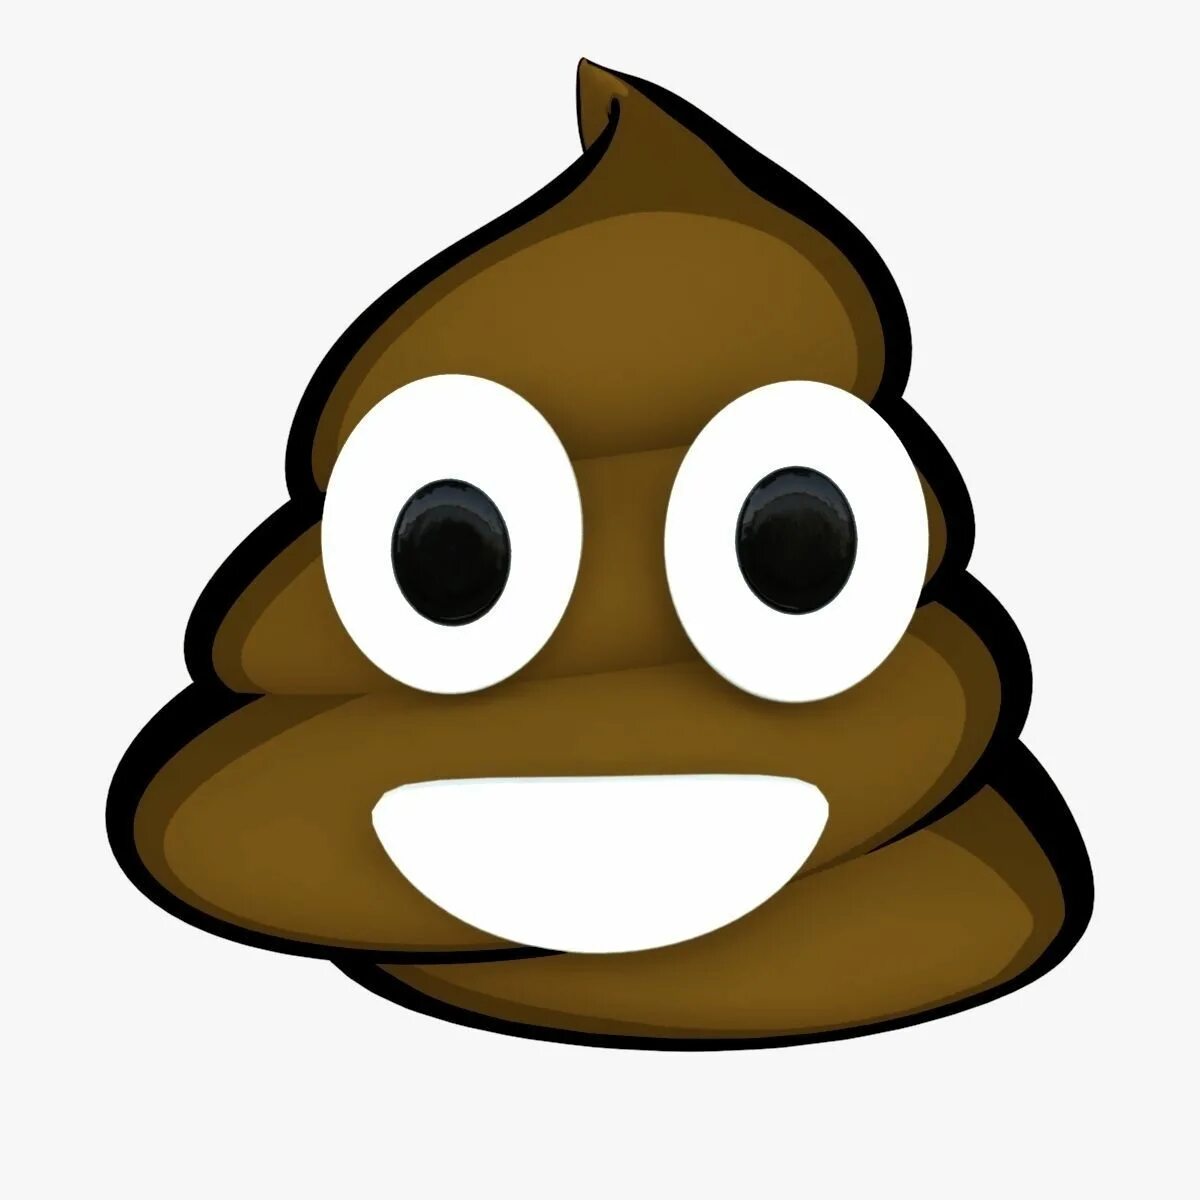 Poop emoji. Poop smile. 3d poop Emoji. Cursed poop Emoji. Pepepoop Смайл.